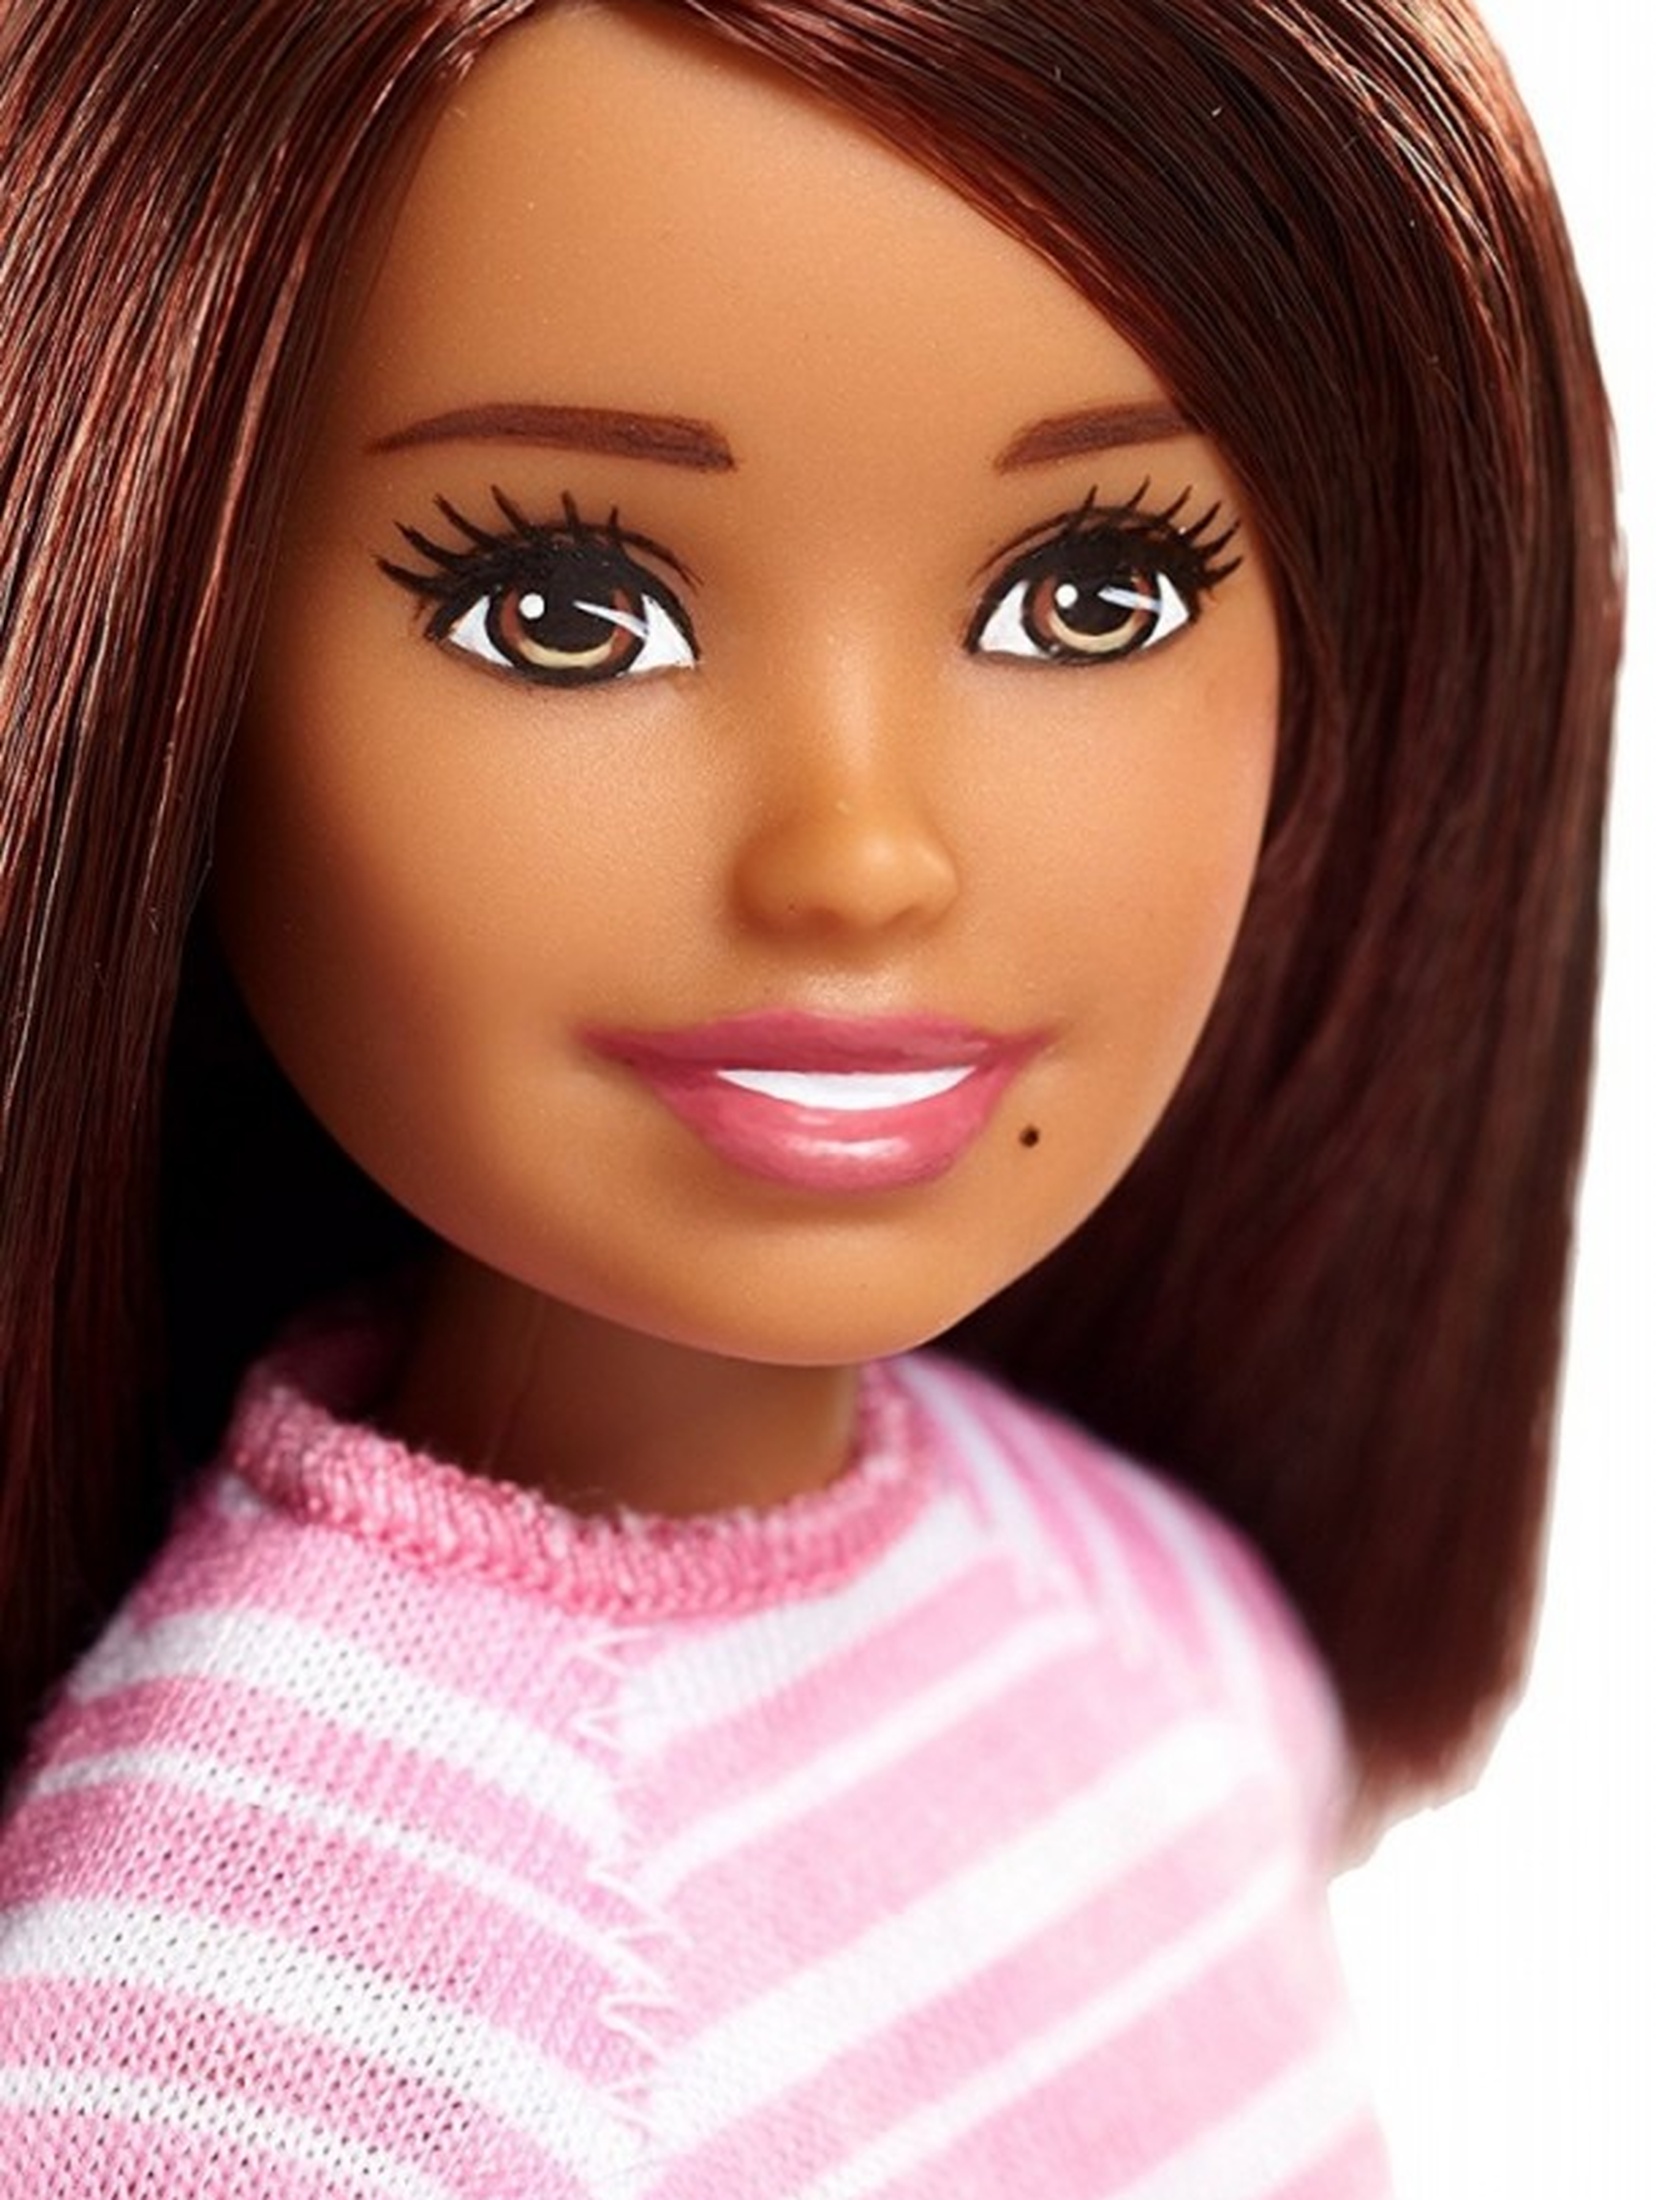 Barbie Opiekunka dziecięca zestaw FHY92